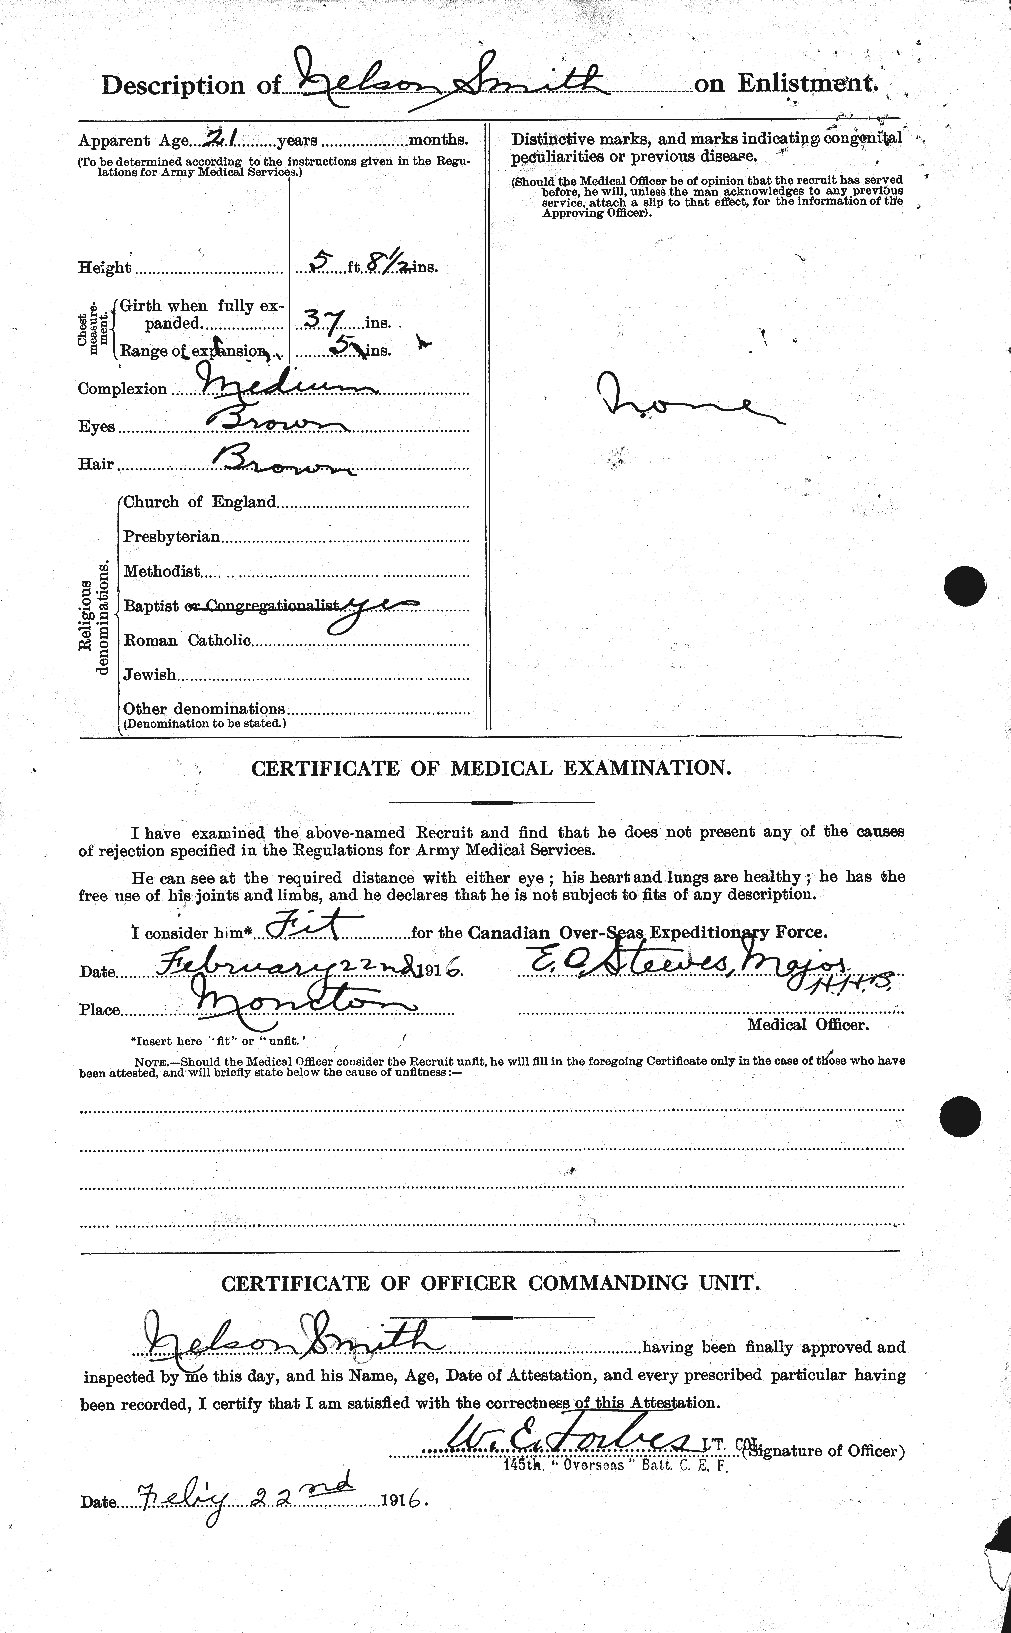 Dossiers du Personnel de la Première Guerre mondiale - CEC 104172b